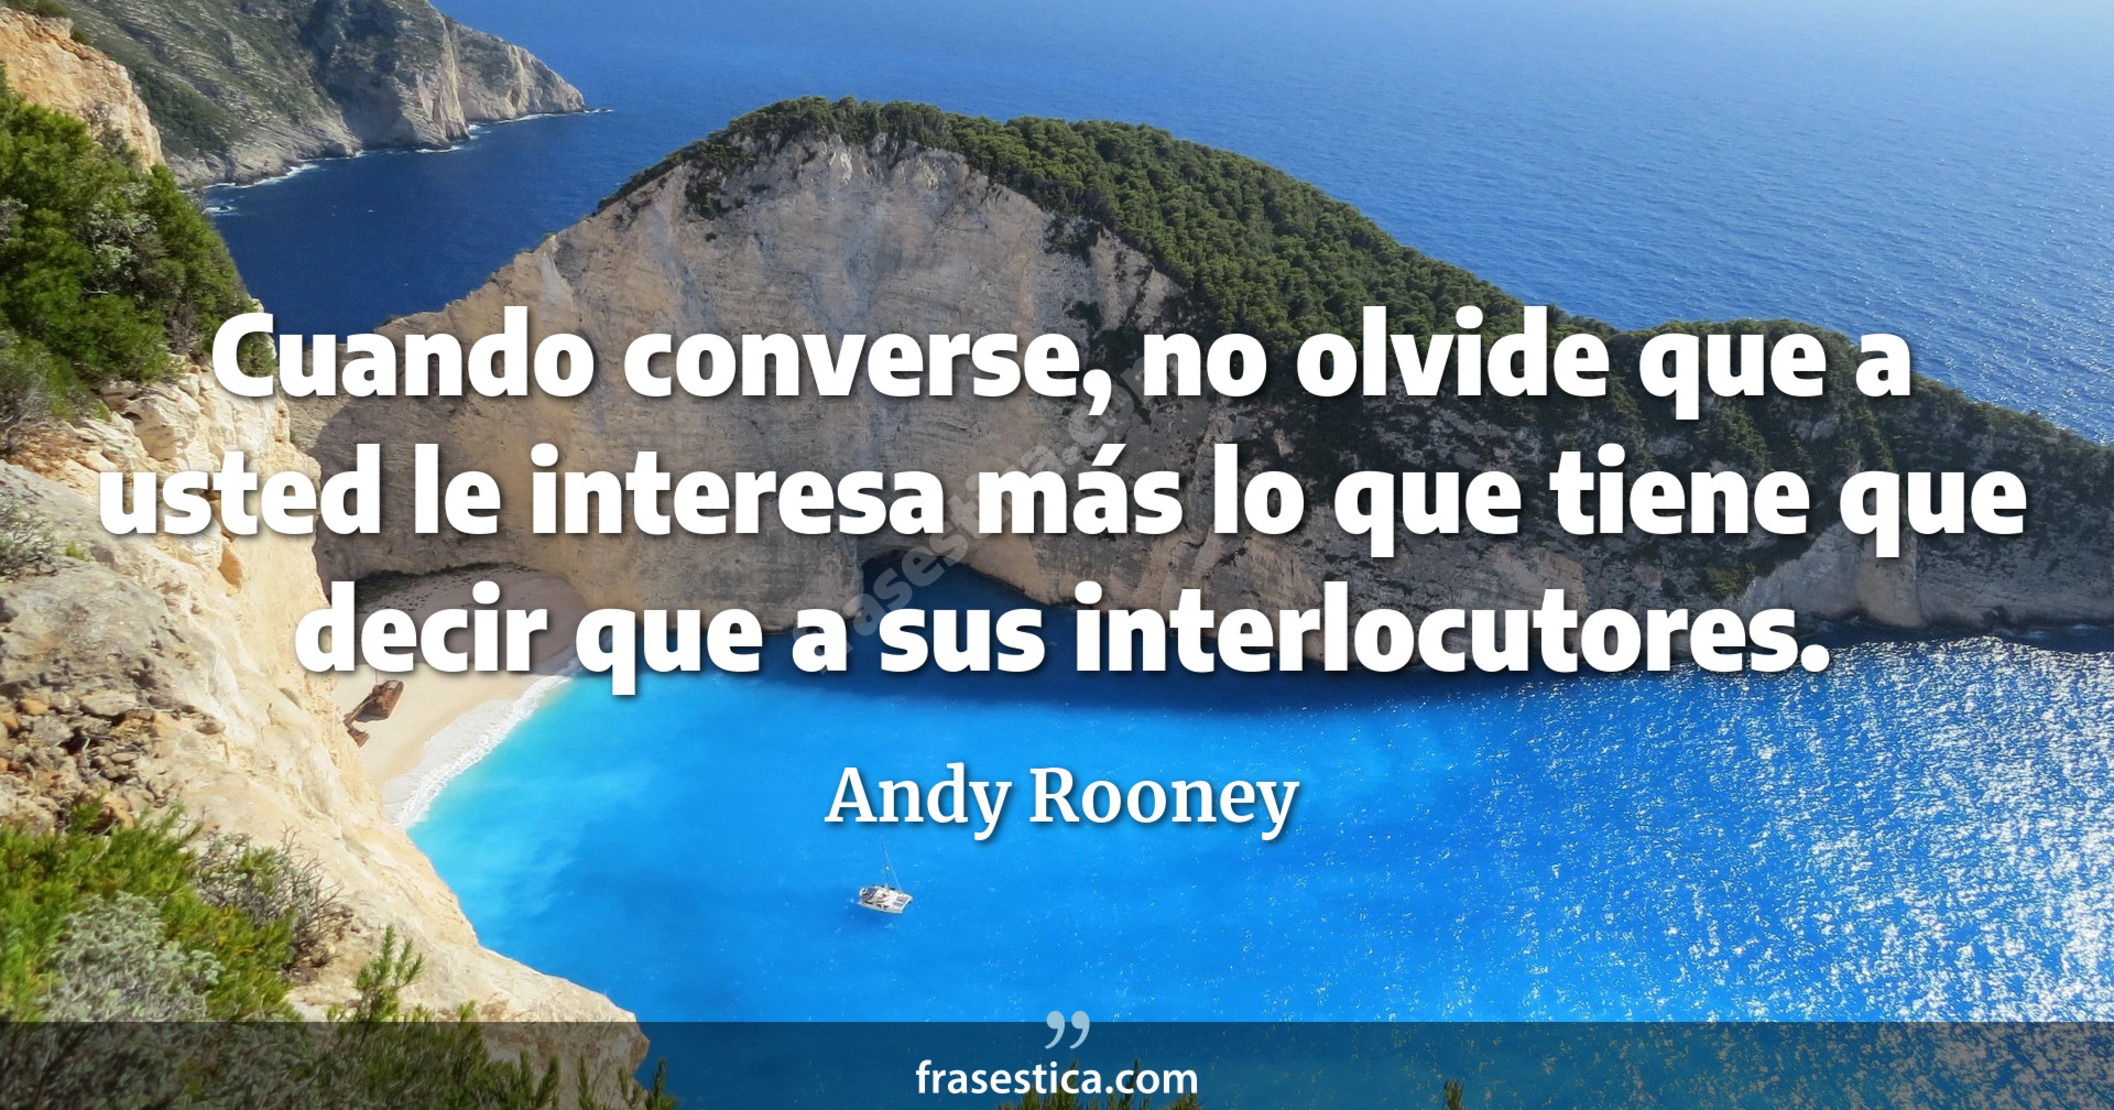 Cuando converse, no olvide que a usted le interesa más lo que tiene que decir que a sus interlocutores. - Andy Rooney